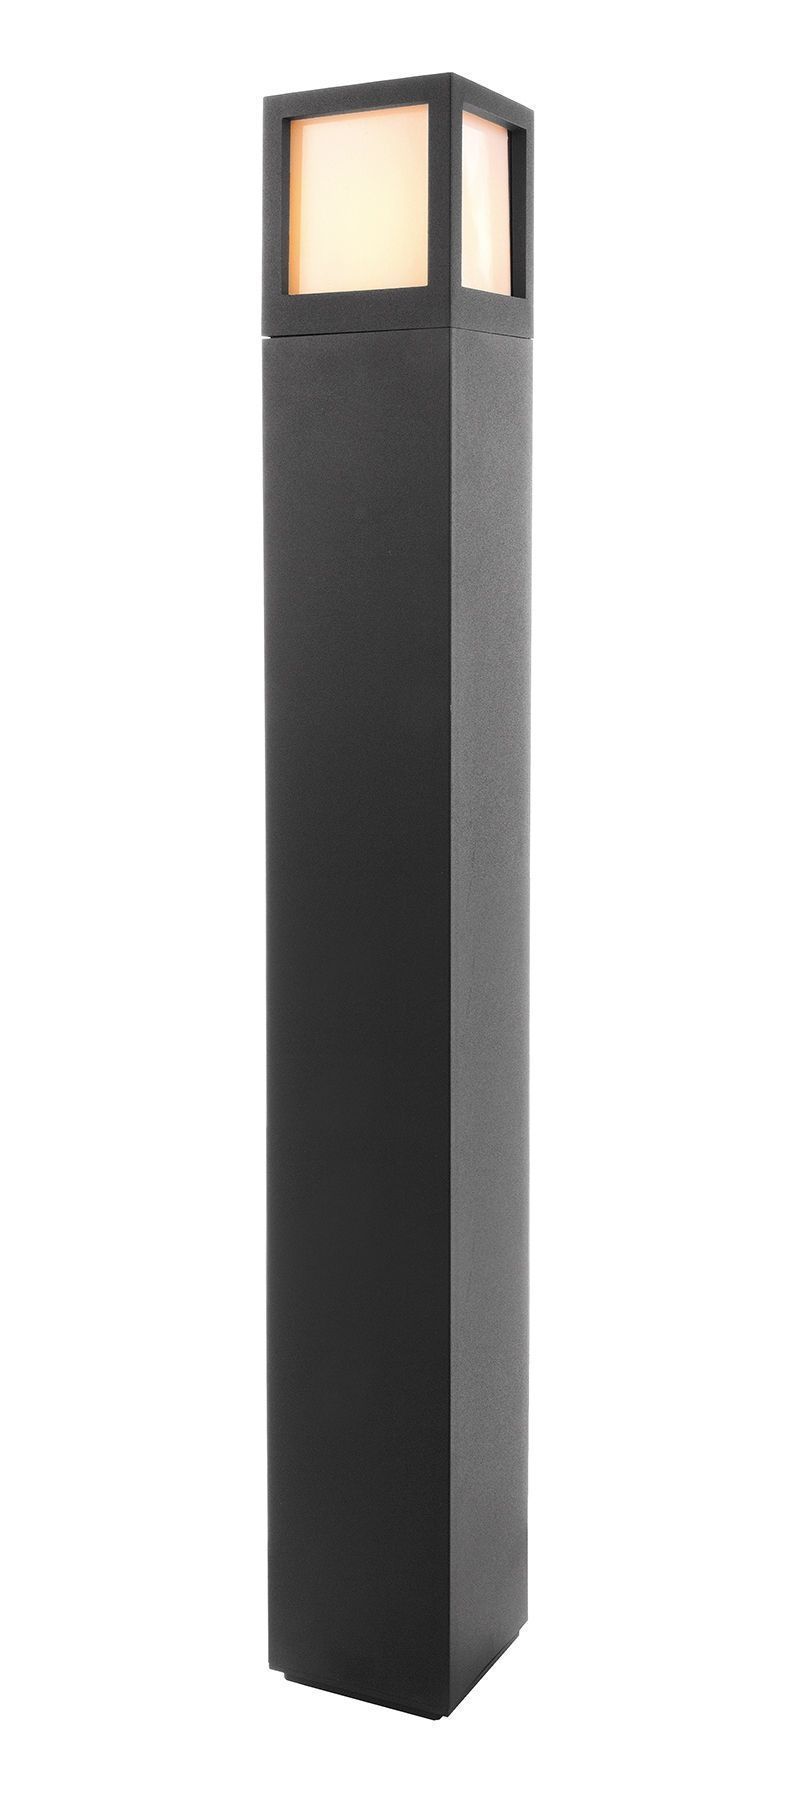 Facado A 1000 mm, 1x max. 20 W E27, Anthrazit